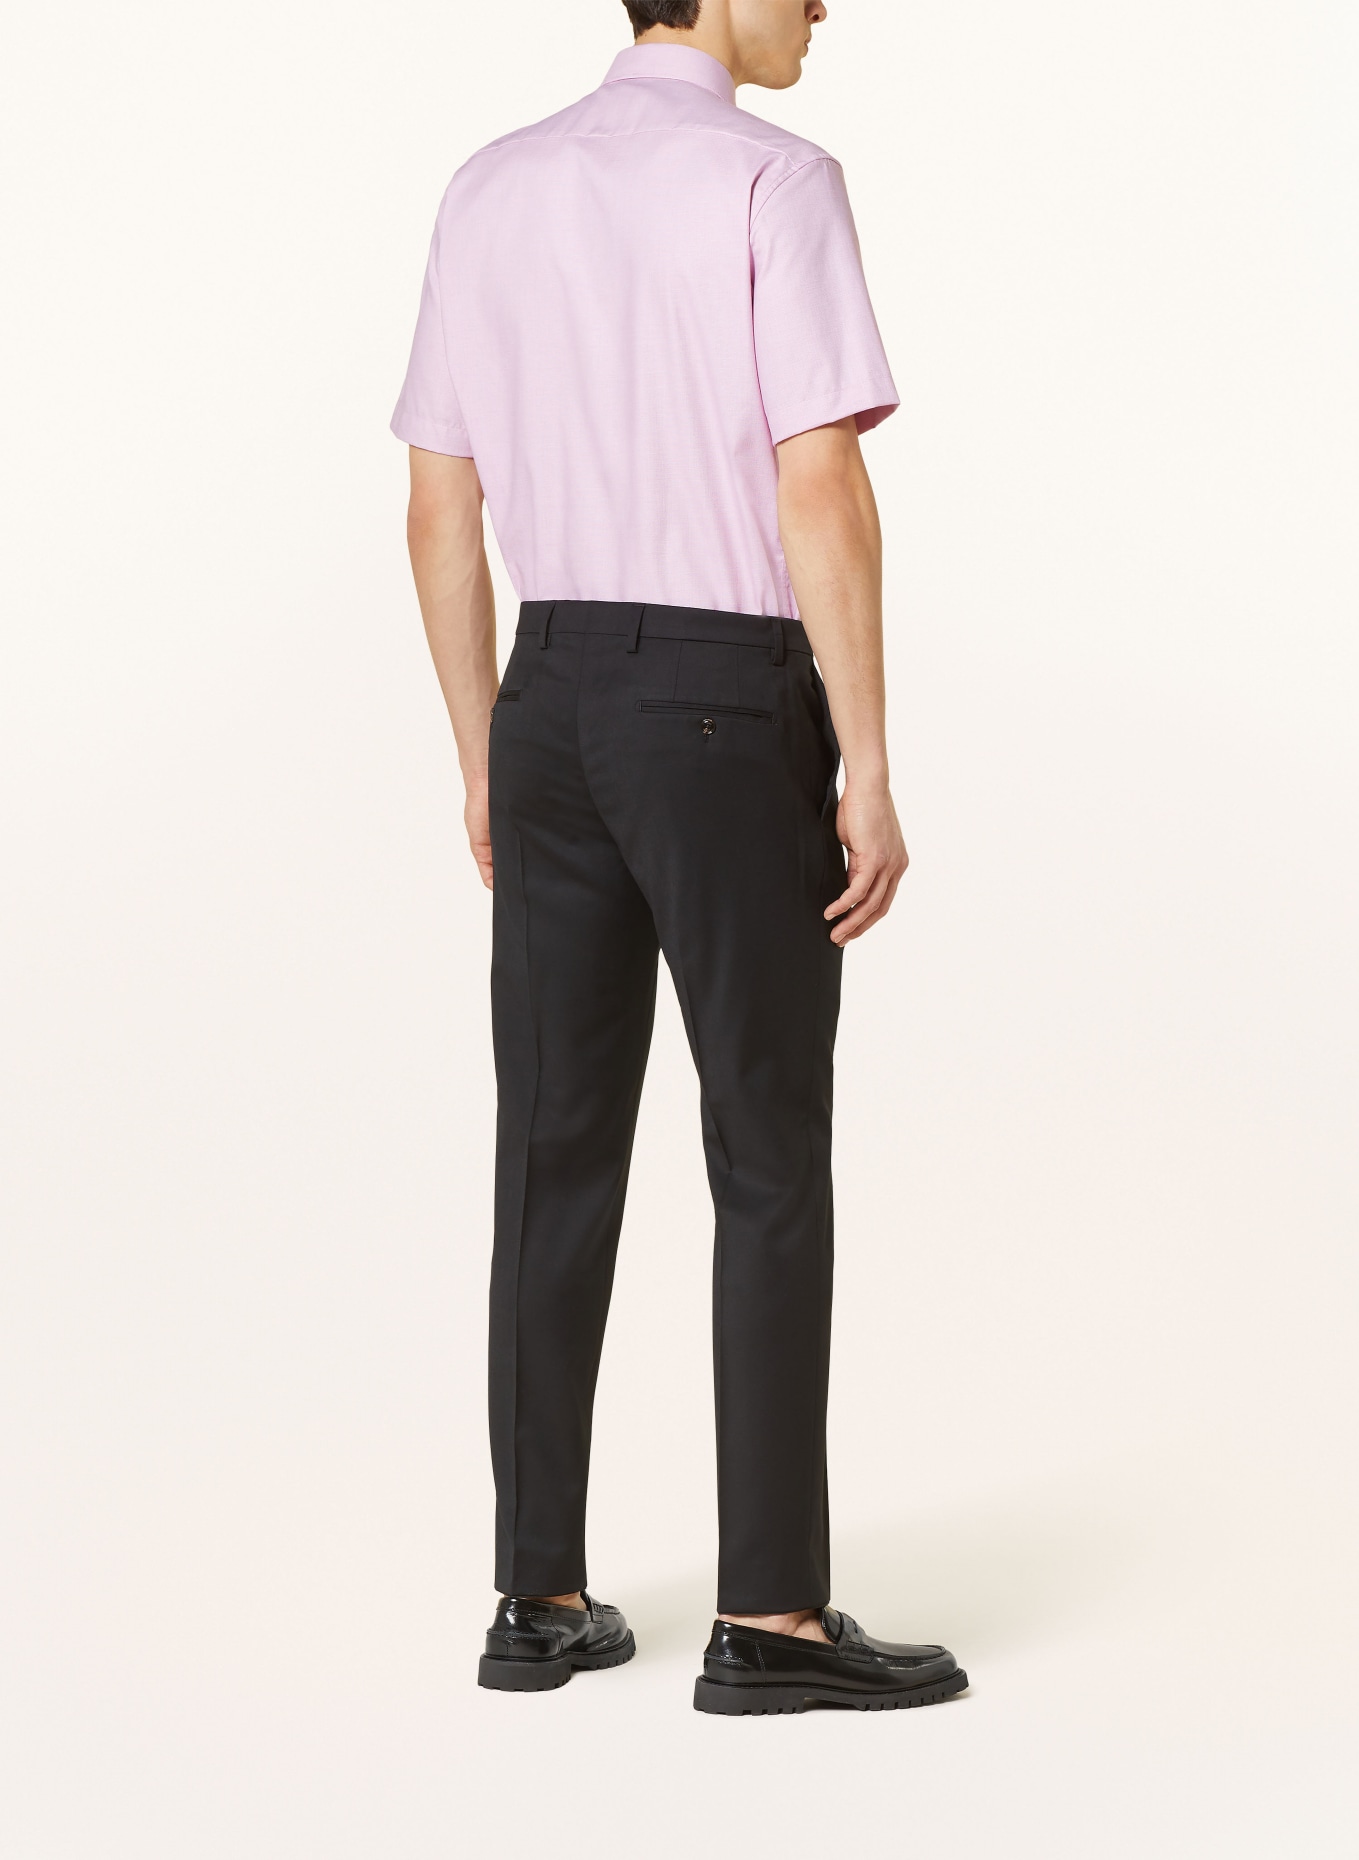 ETERNA Short sleeve shirt comfort fit, Color: PINK (Image 3)